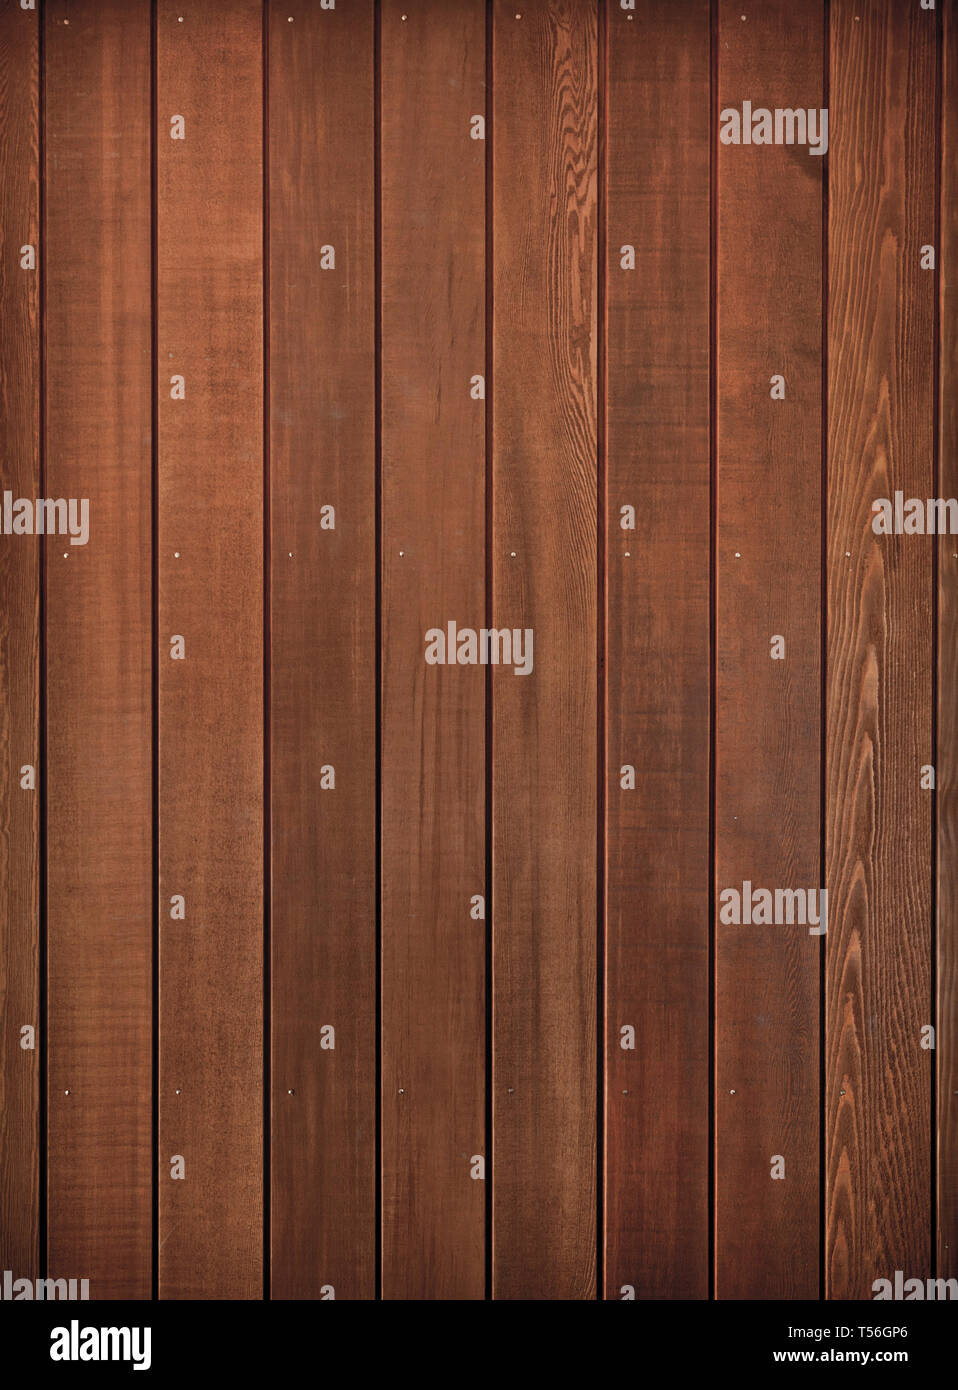 Cedar Wood On An Interior Wall Stock Photo 244163310 Alamy